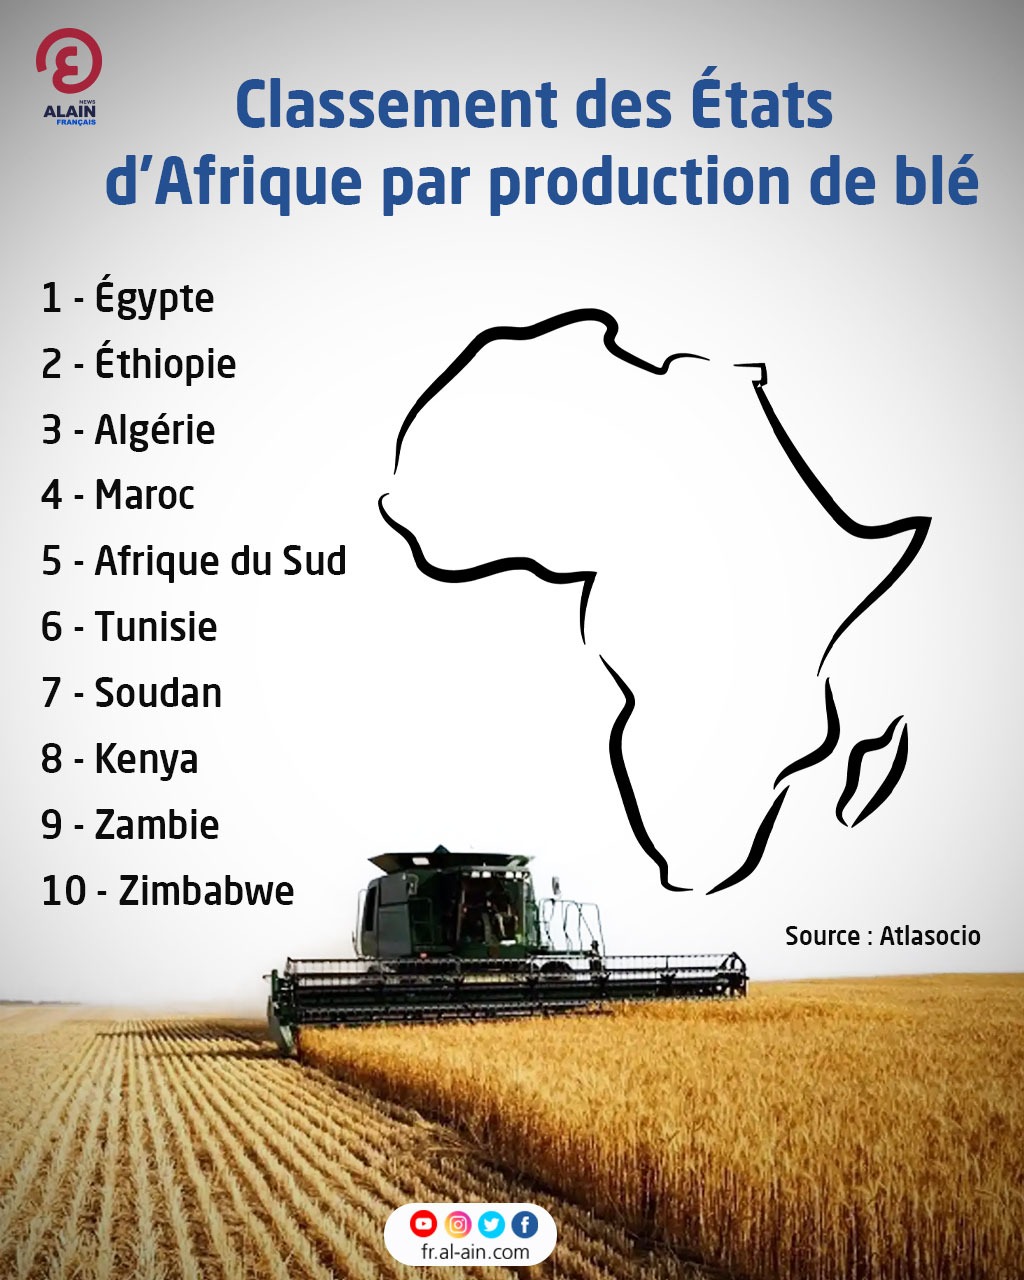 Classement des États d'Afrique par production de blé